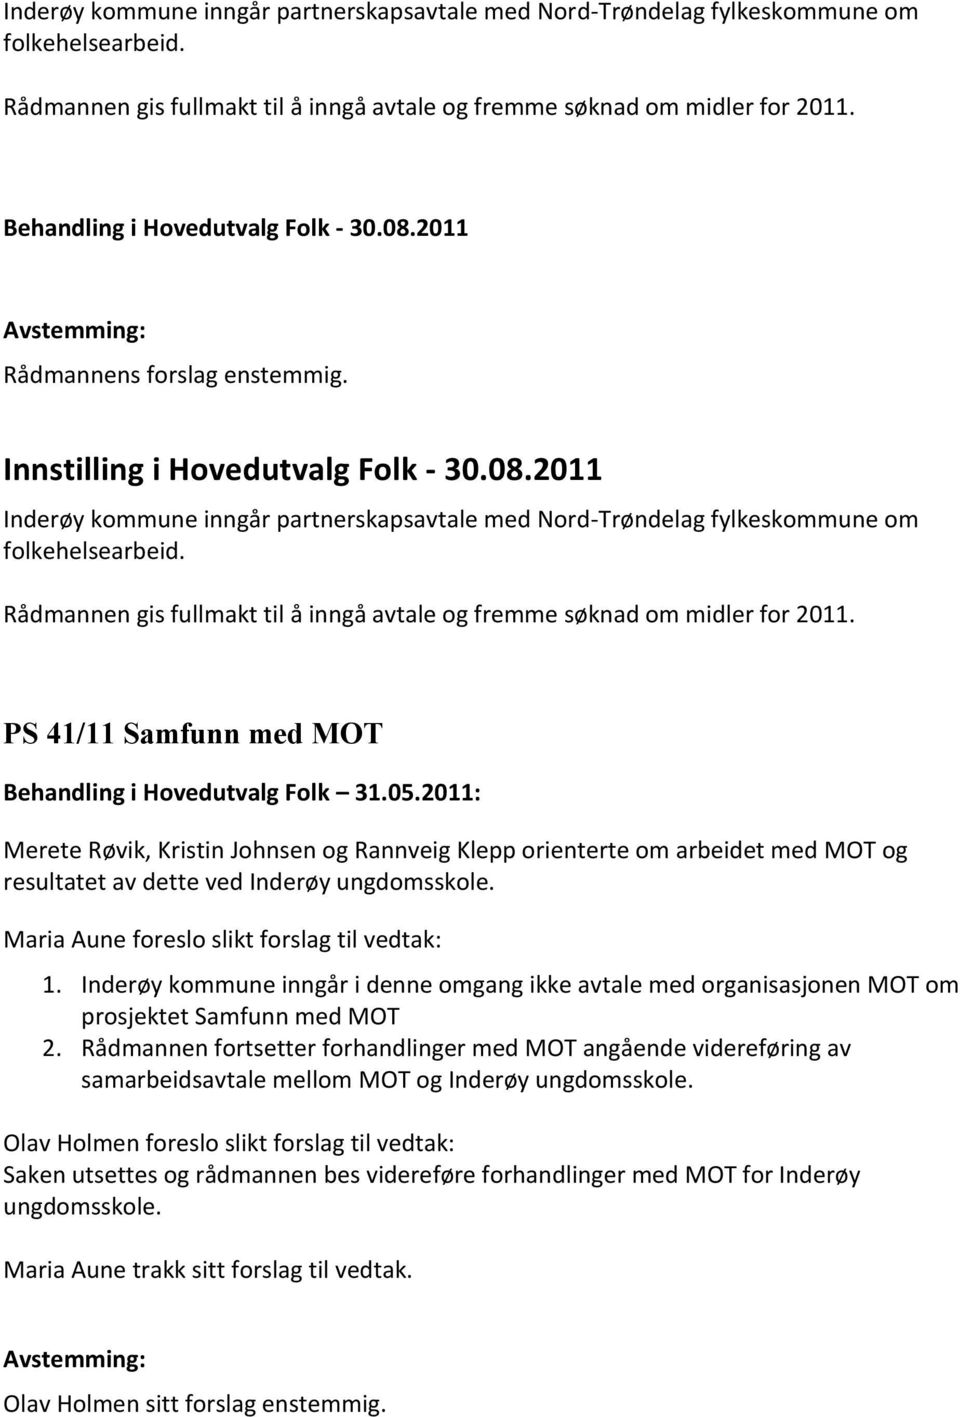 2011: Merete Røvik, Kristin Johnsen og Rannveig Klepp orienterte om arbeidet med MOT og resultatet av dette ved Inderøy ungdomsskole. Maria Aune foreslo slikt forslag til vedtak: 1.